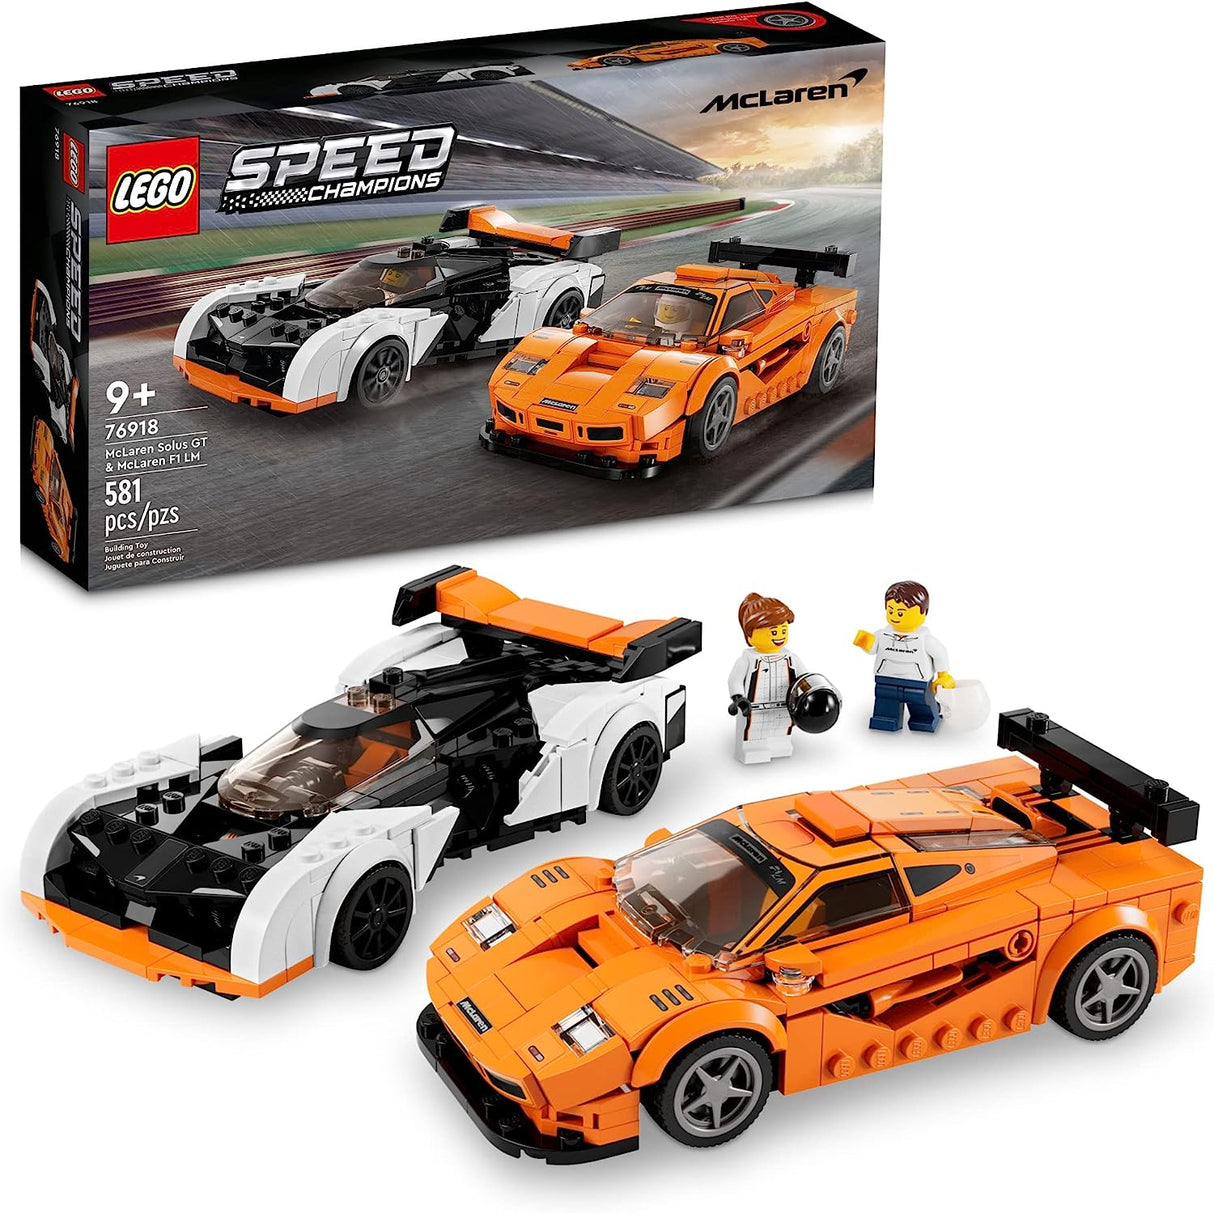 Lego McLaren Solus GT & F1 LM